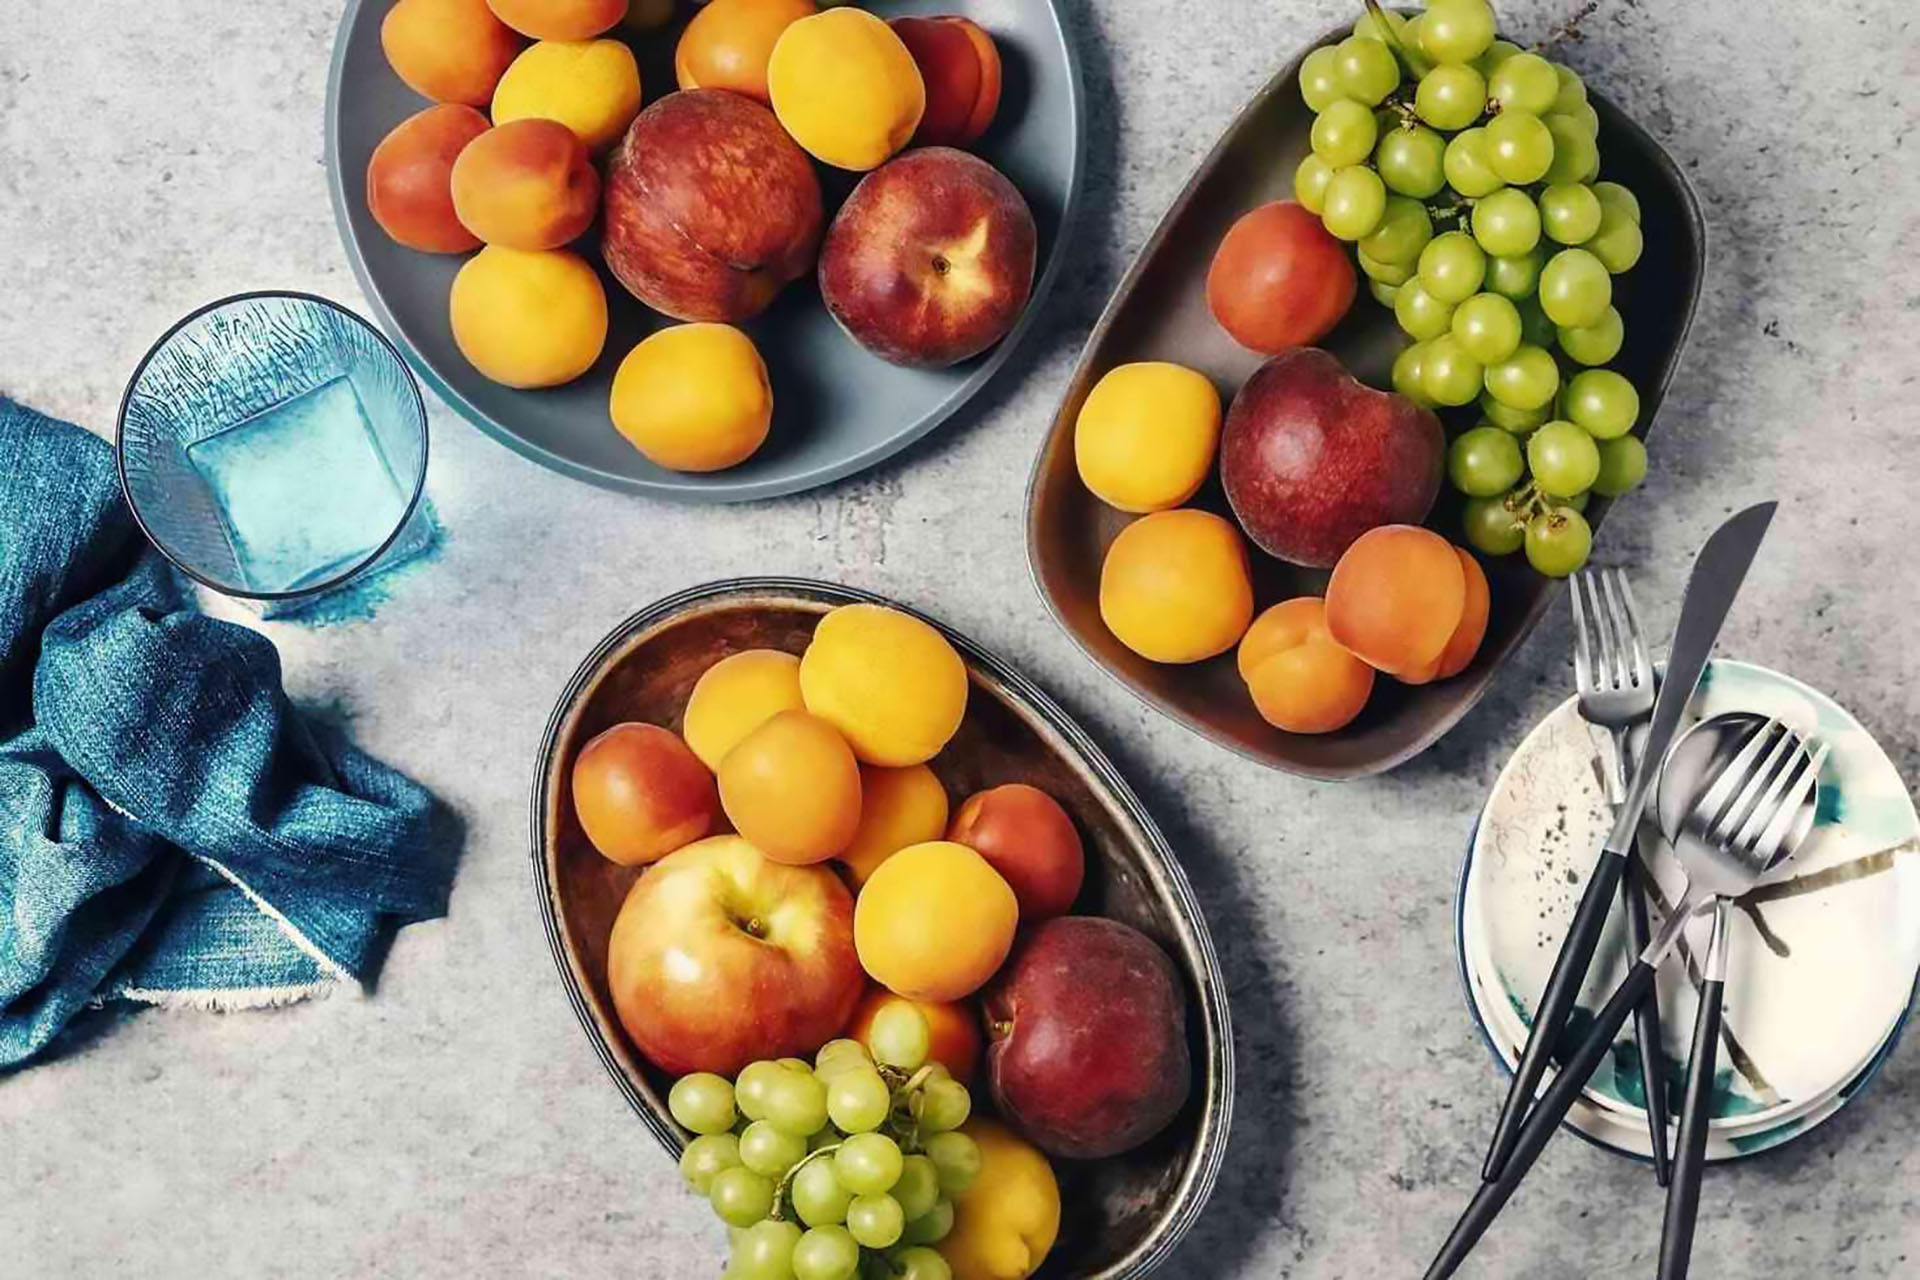 Las frutas que sirven en año nuevo suelen ser manzanas, uvas y ciruelas